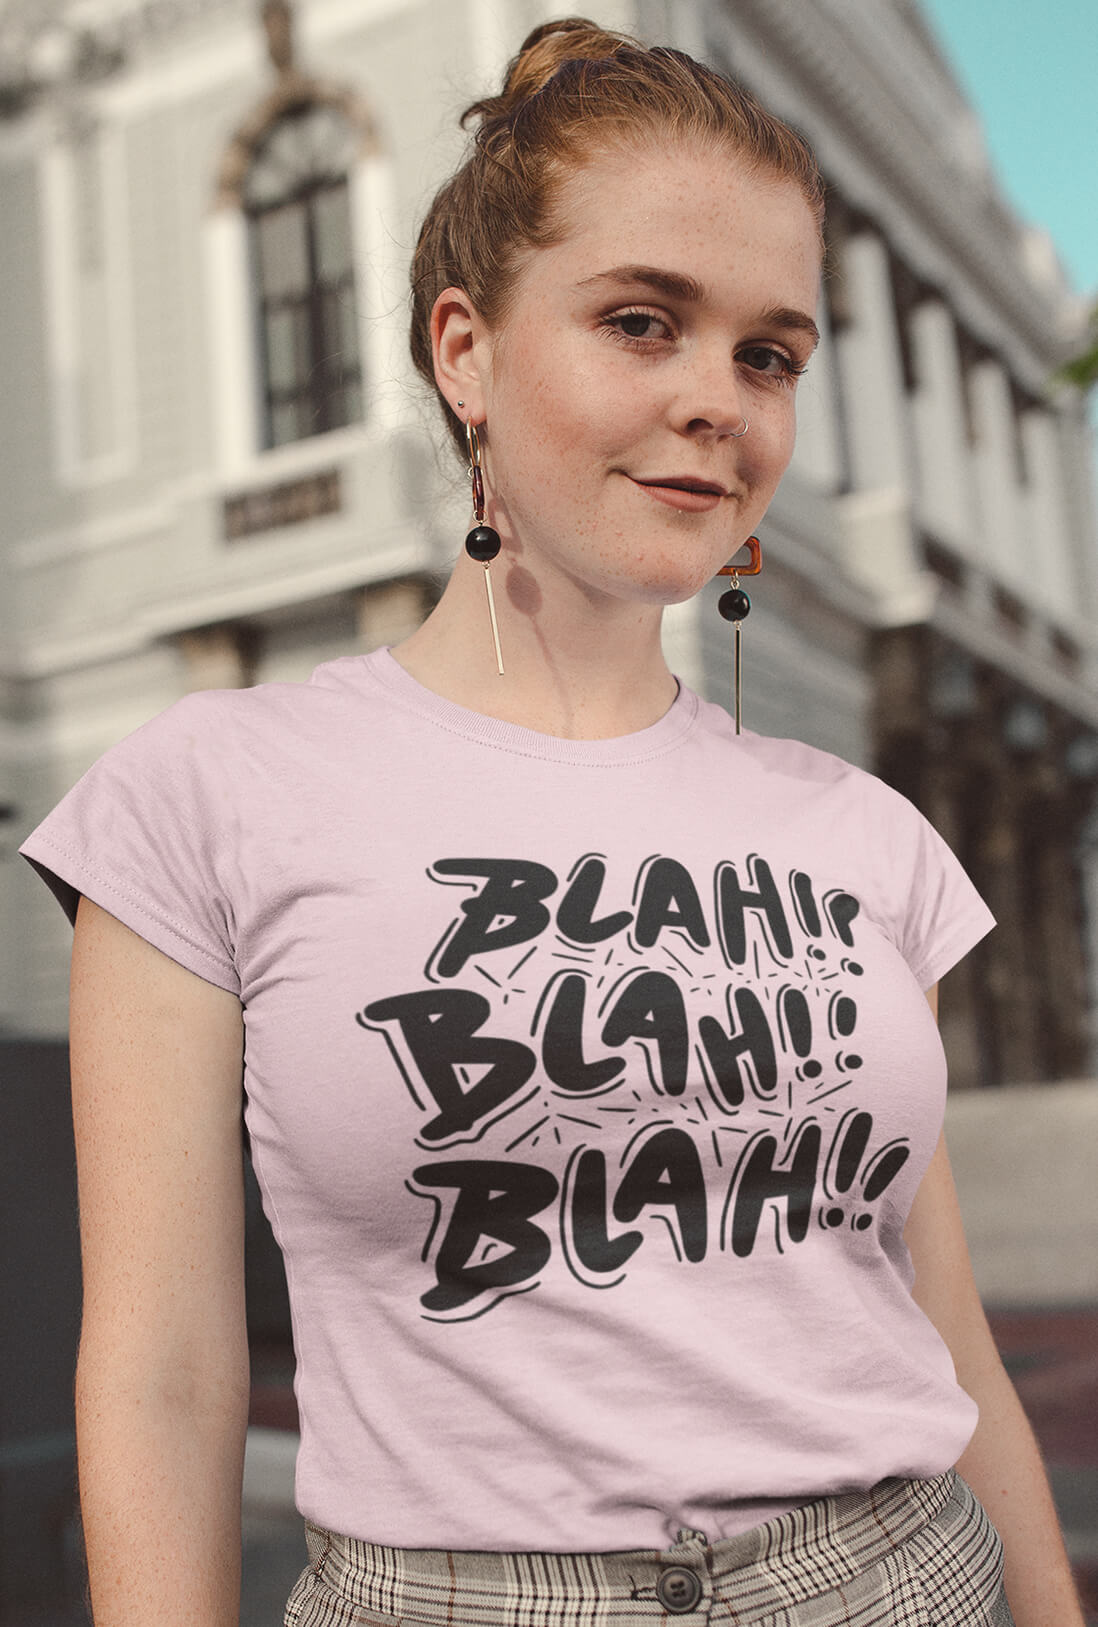 Blah Blah Blah Women's Cotton T-Shirt